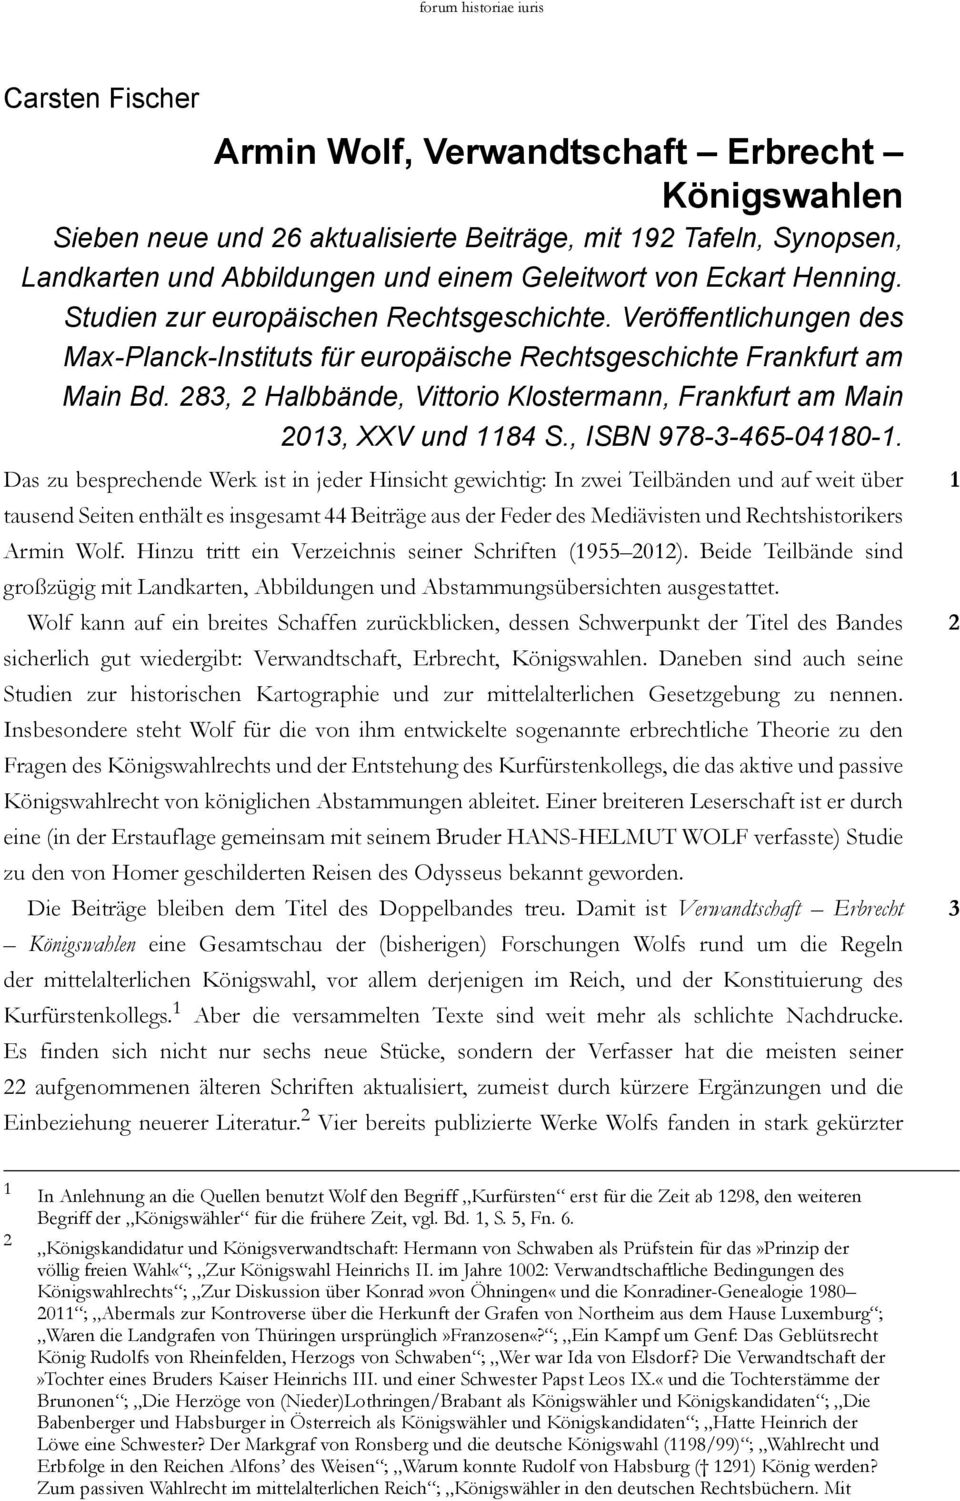 283, 2 Halbbände, Vittorio Klostermann, Frankfurt am Main 2013, XXV und 1184 S., ISBN 978-3-465-04180-1.